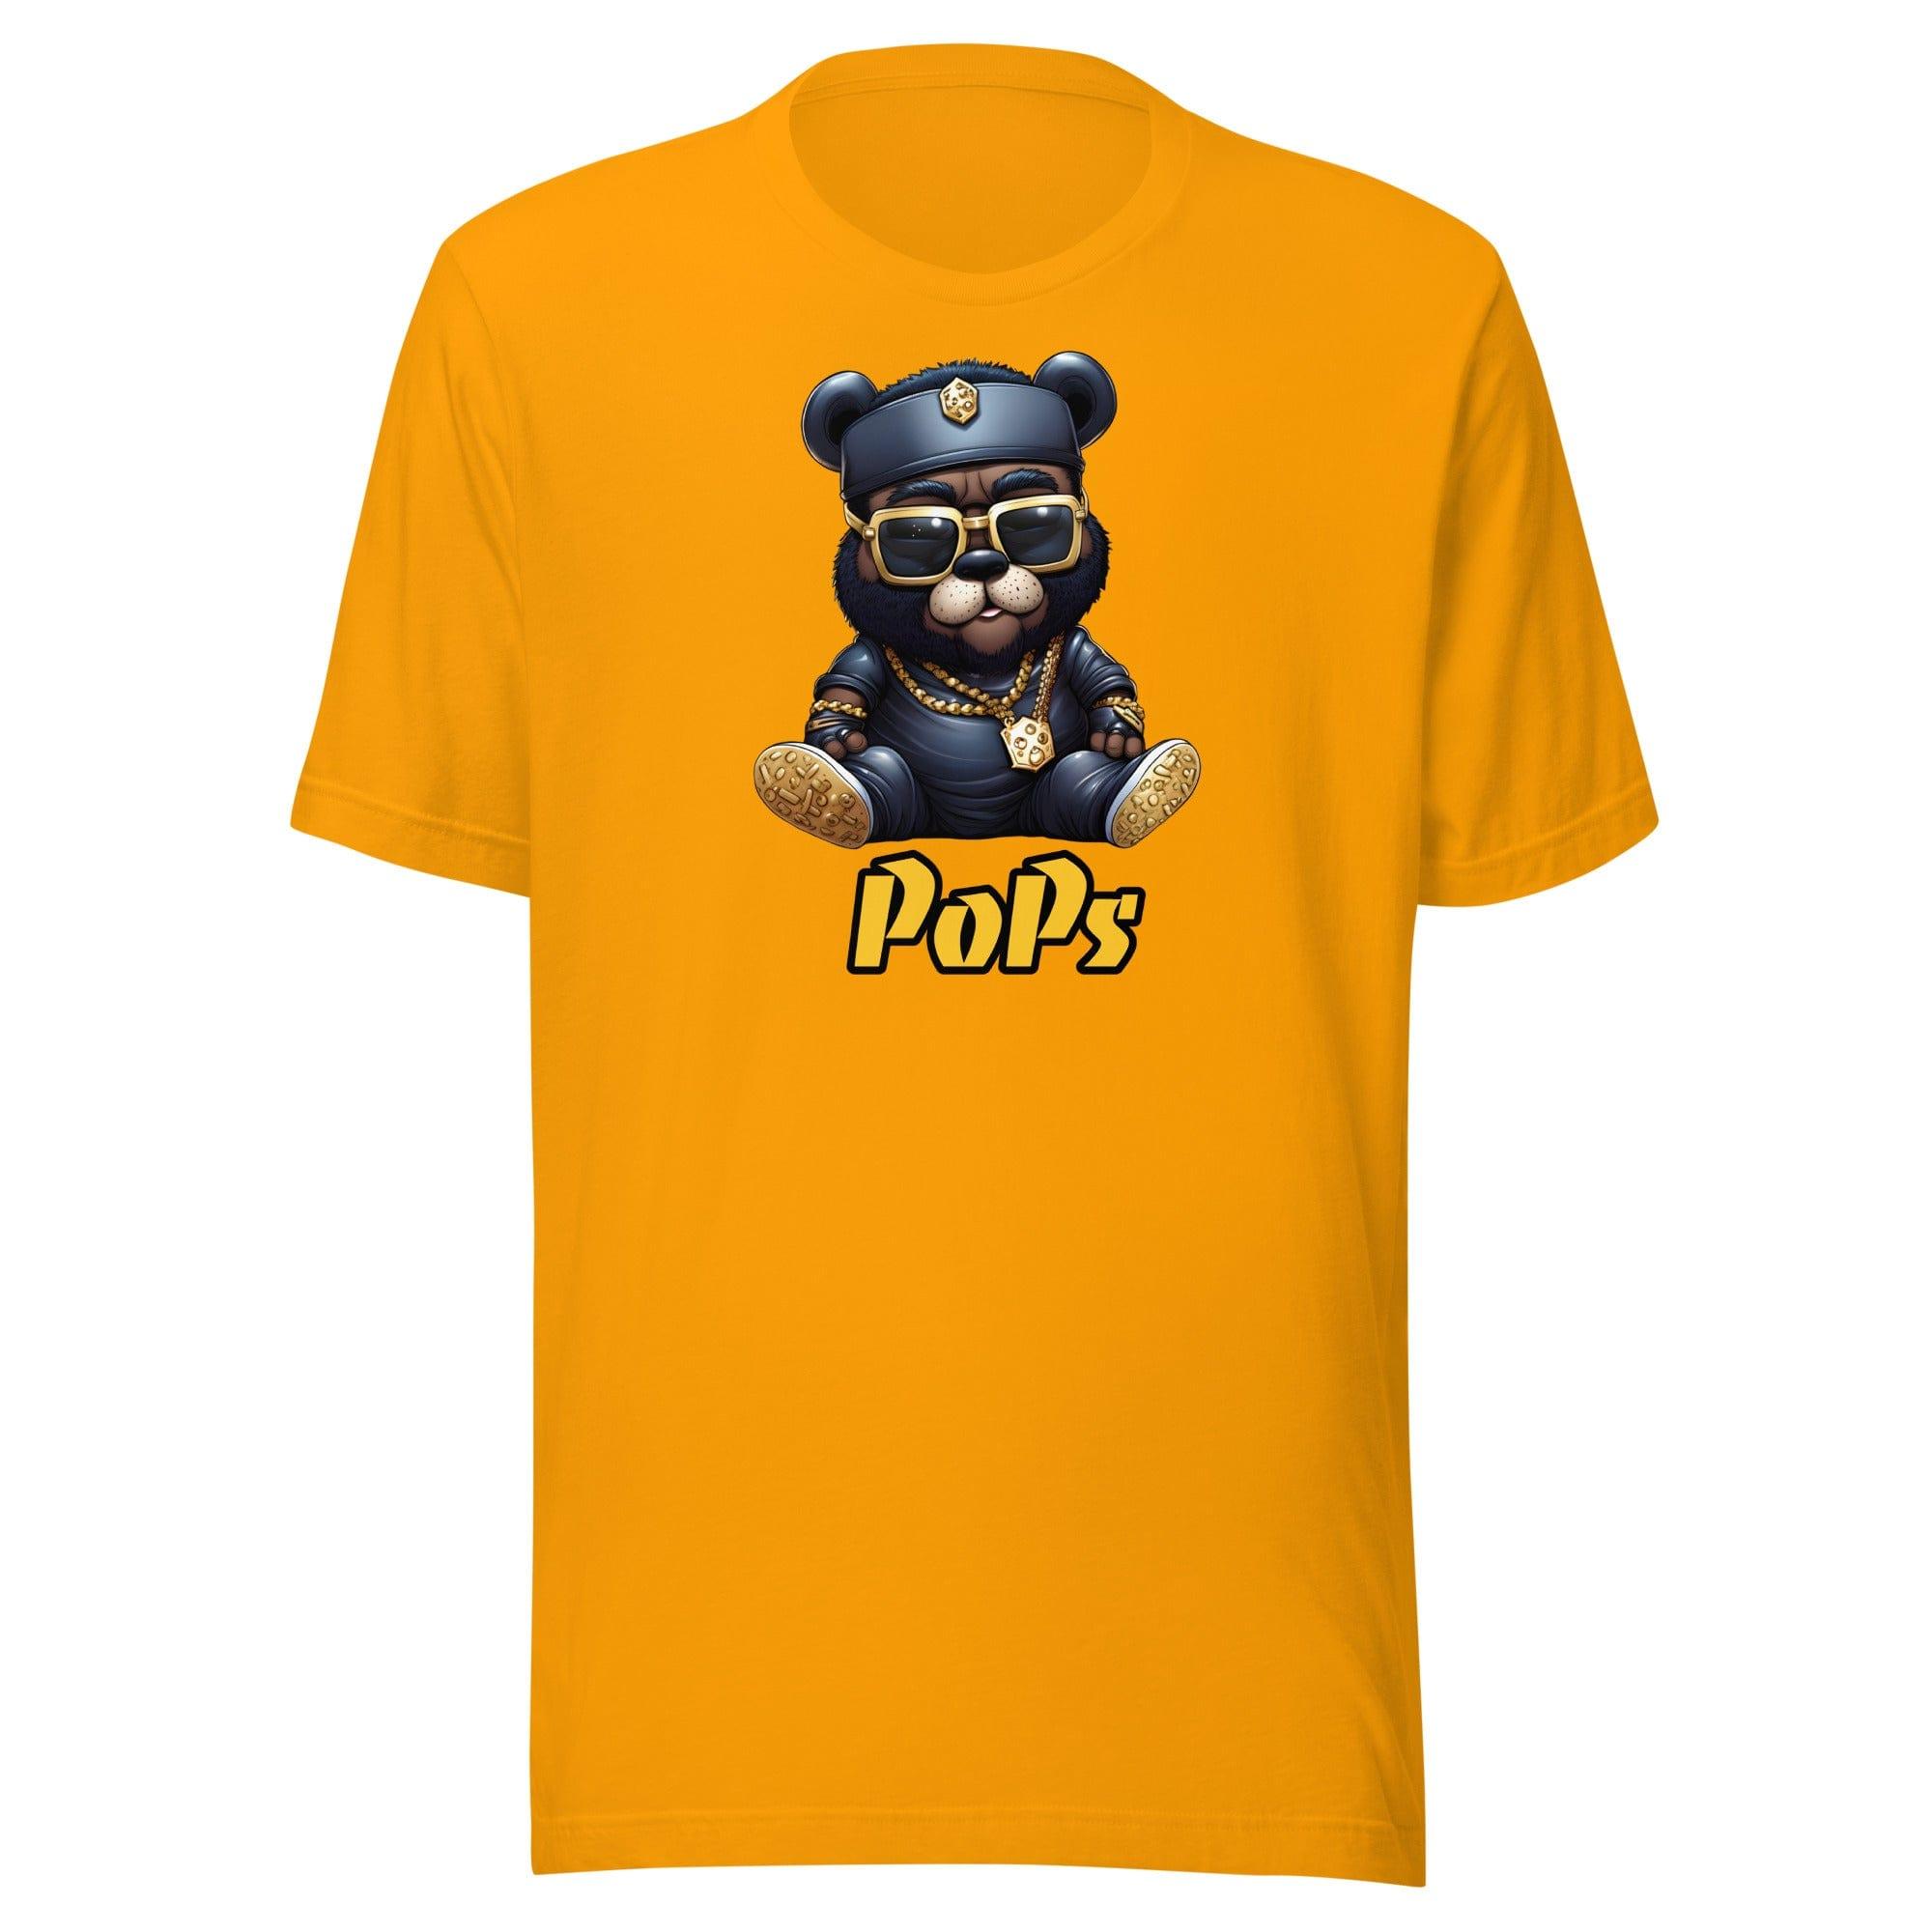 Streat Bear T-Shirt Father's Day PoPs Short Sleeve Top - TopKoalaTee